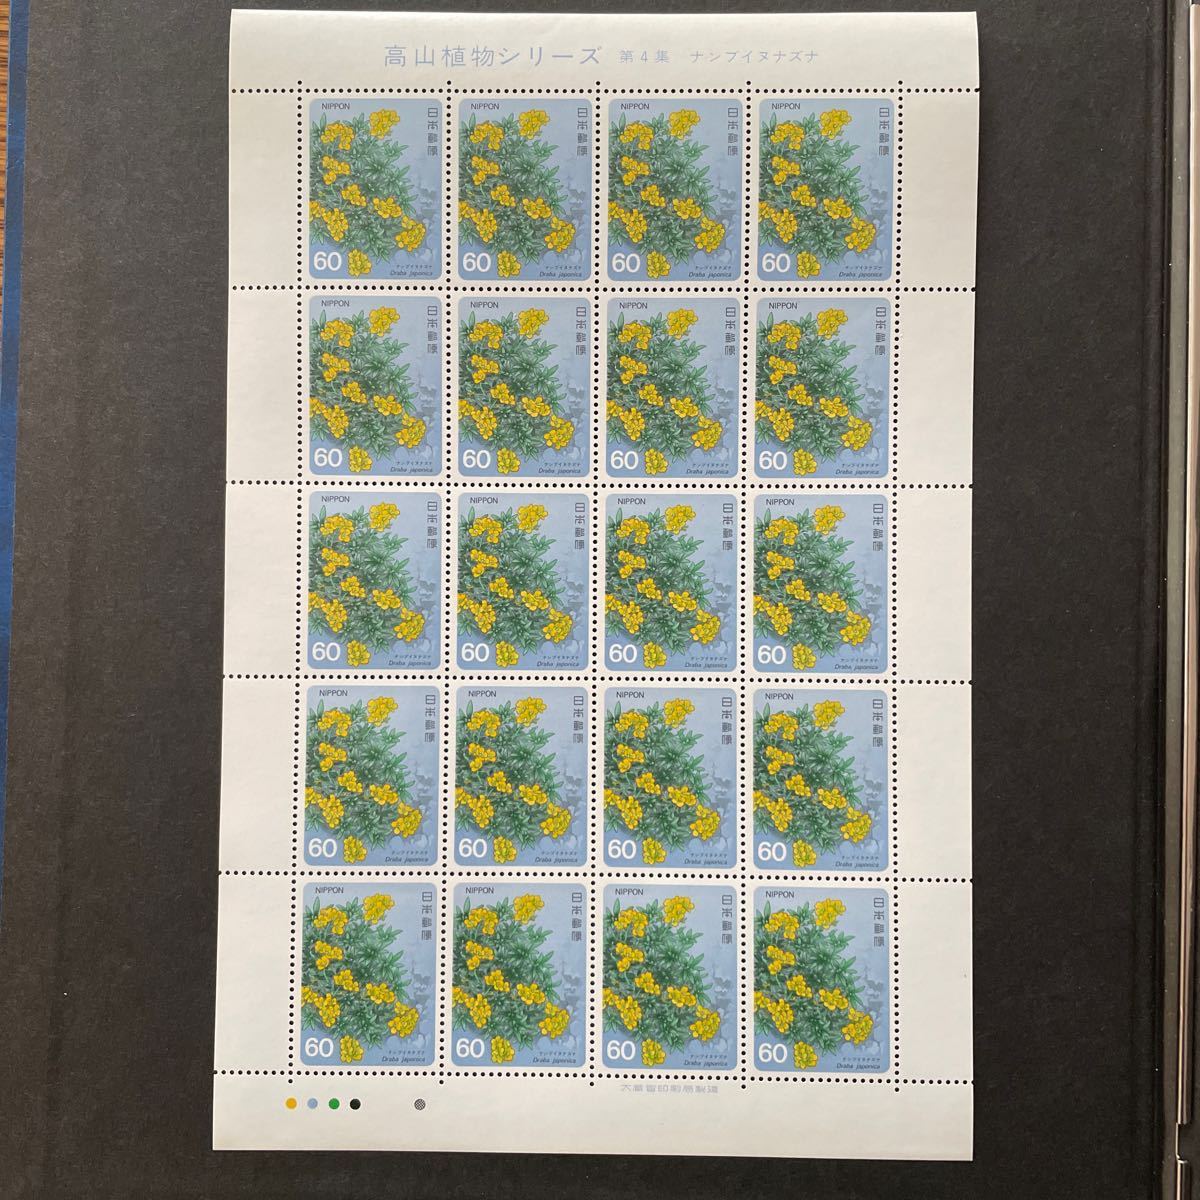 記念切手 高山植物シリーズ第4集 ナンブイヌナズナ 1985年 60円20枚の画像4